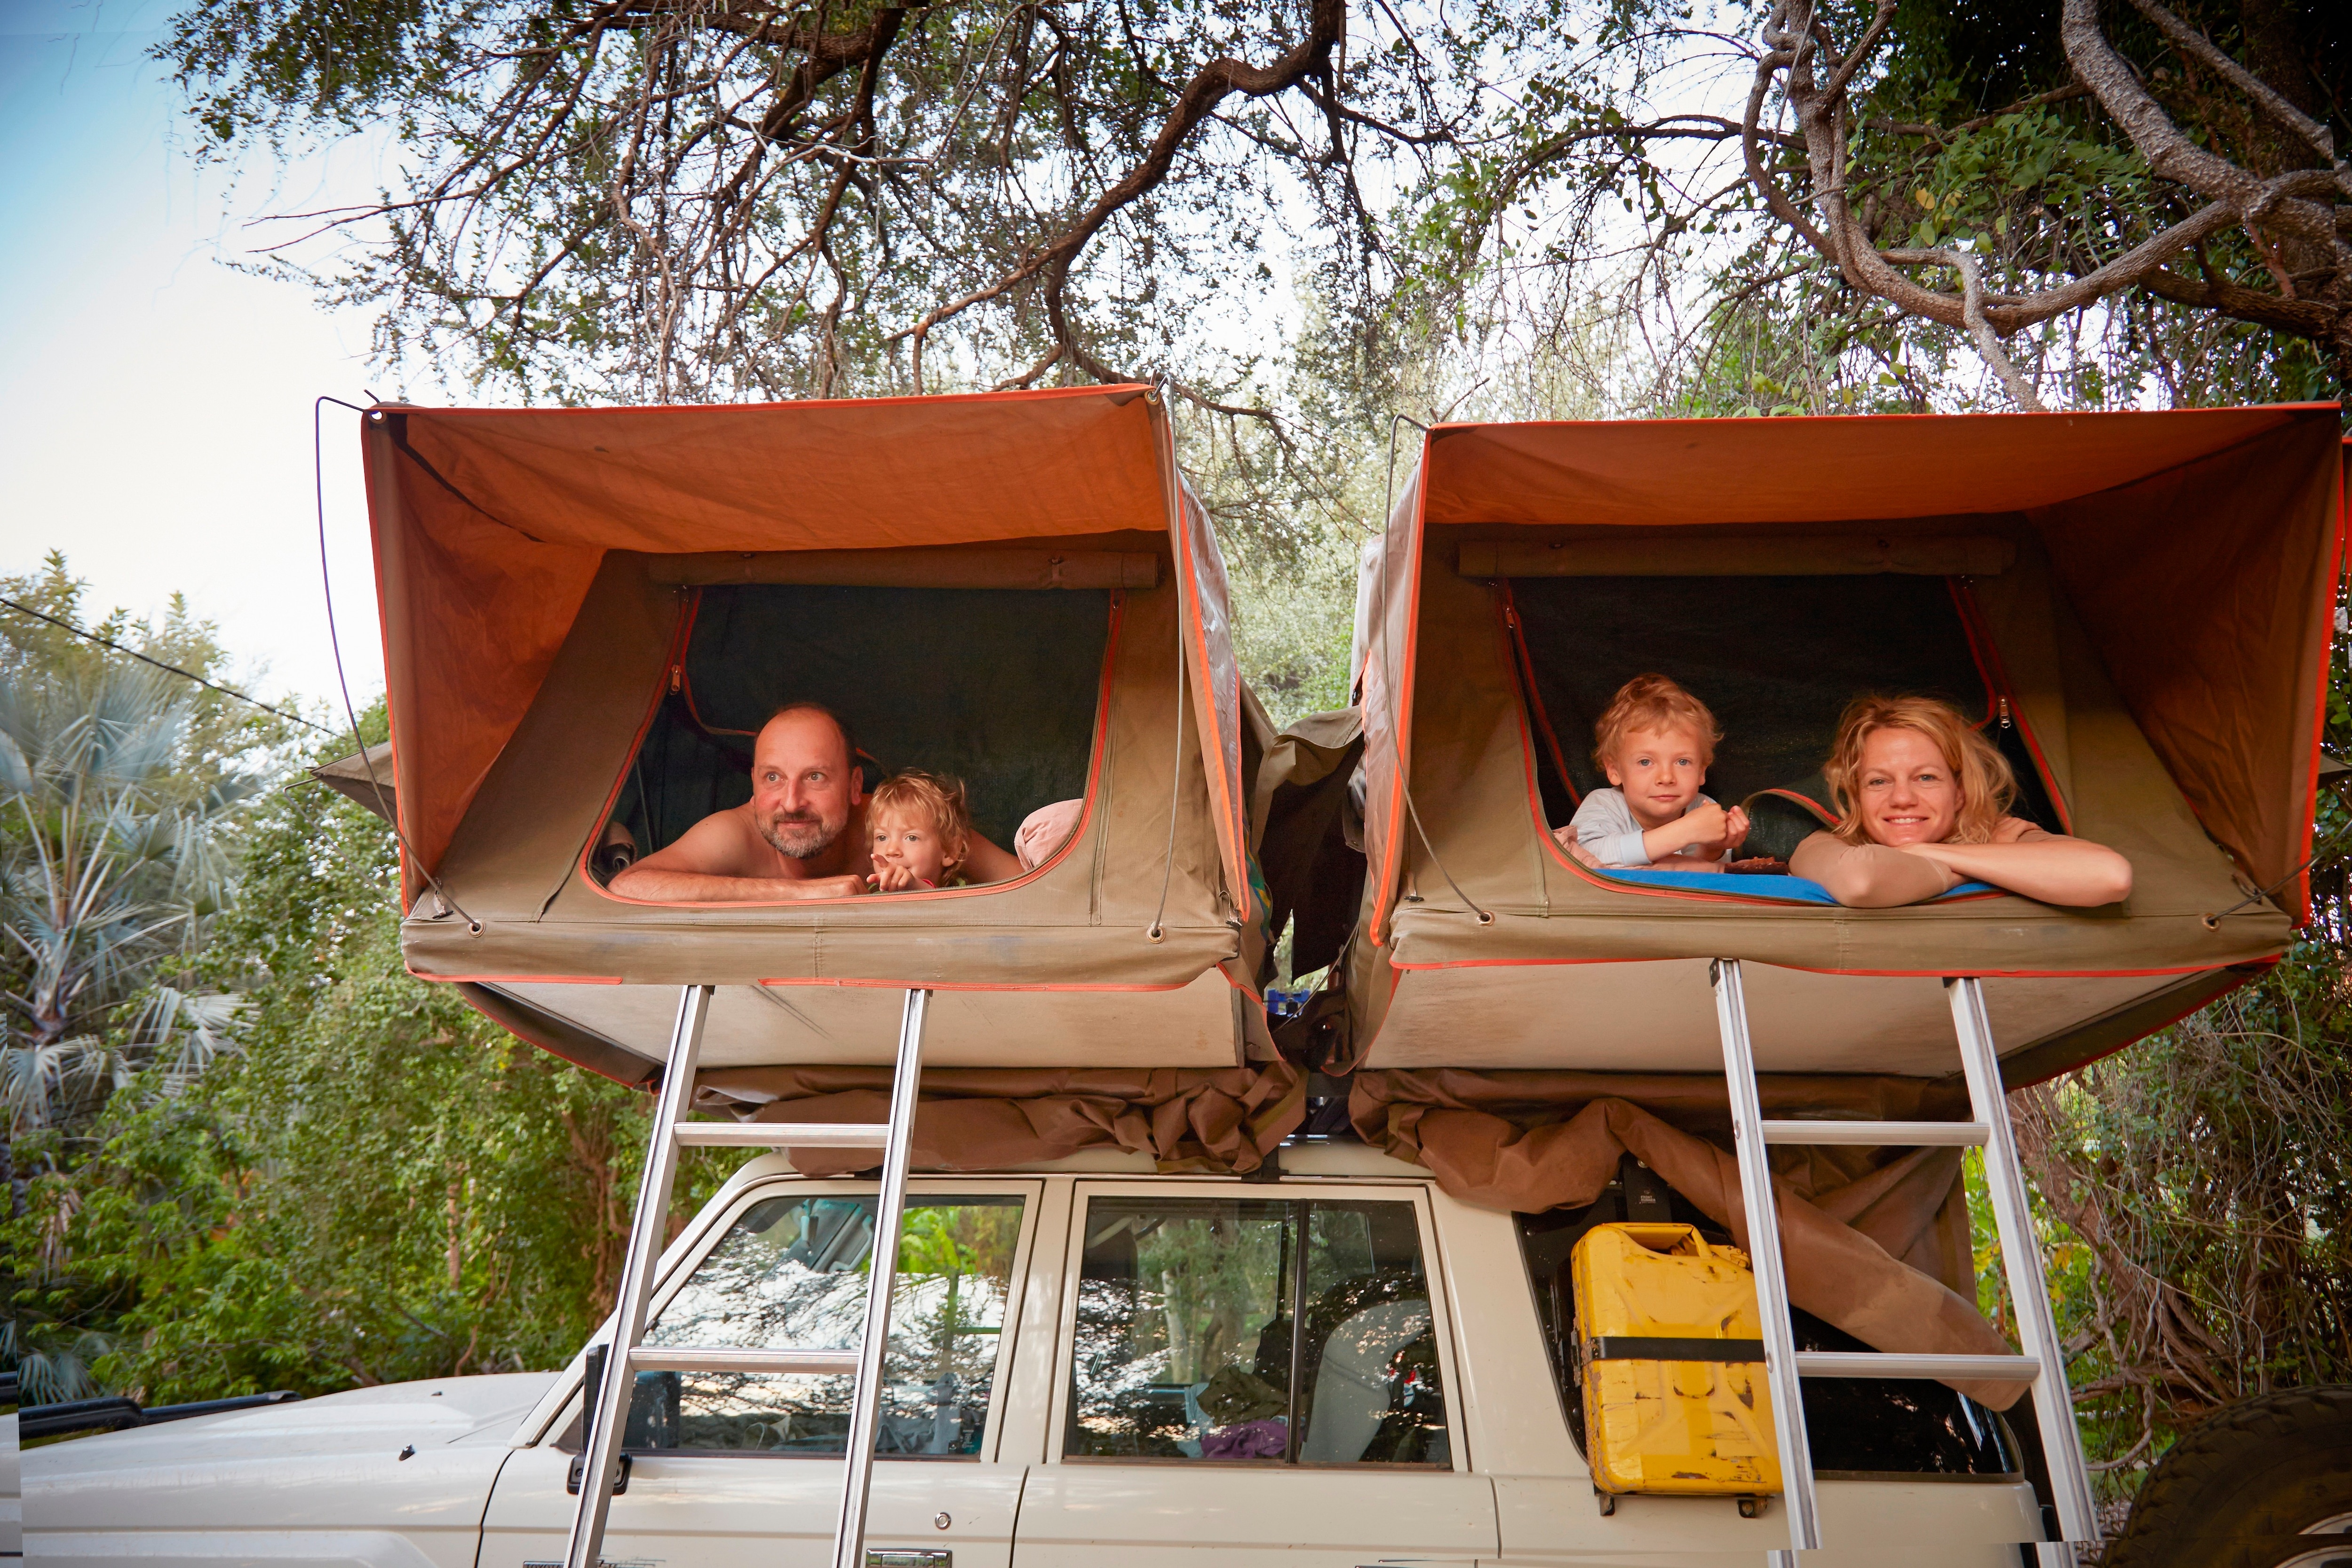 Egal ob mit dem Dachzelt, Campervan oder am Campingplatz: Ein Campingurlaub mit Kindern ist ein unvergessliches Abenteuer